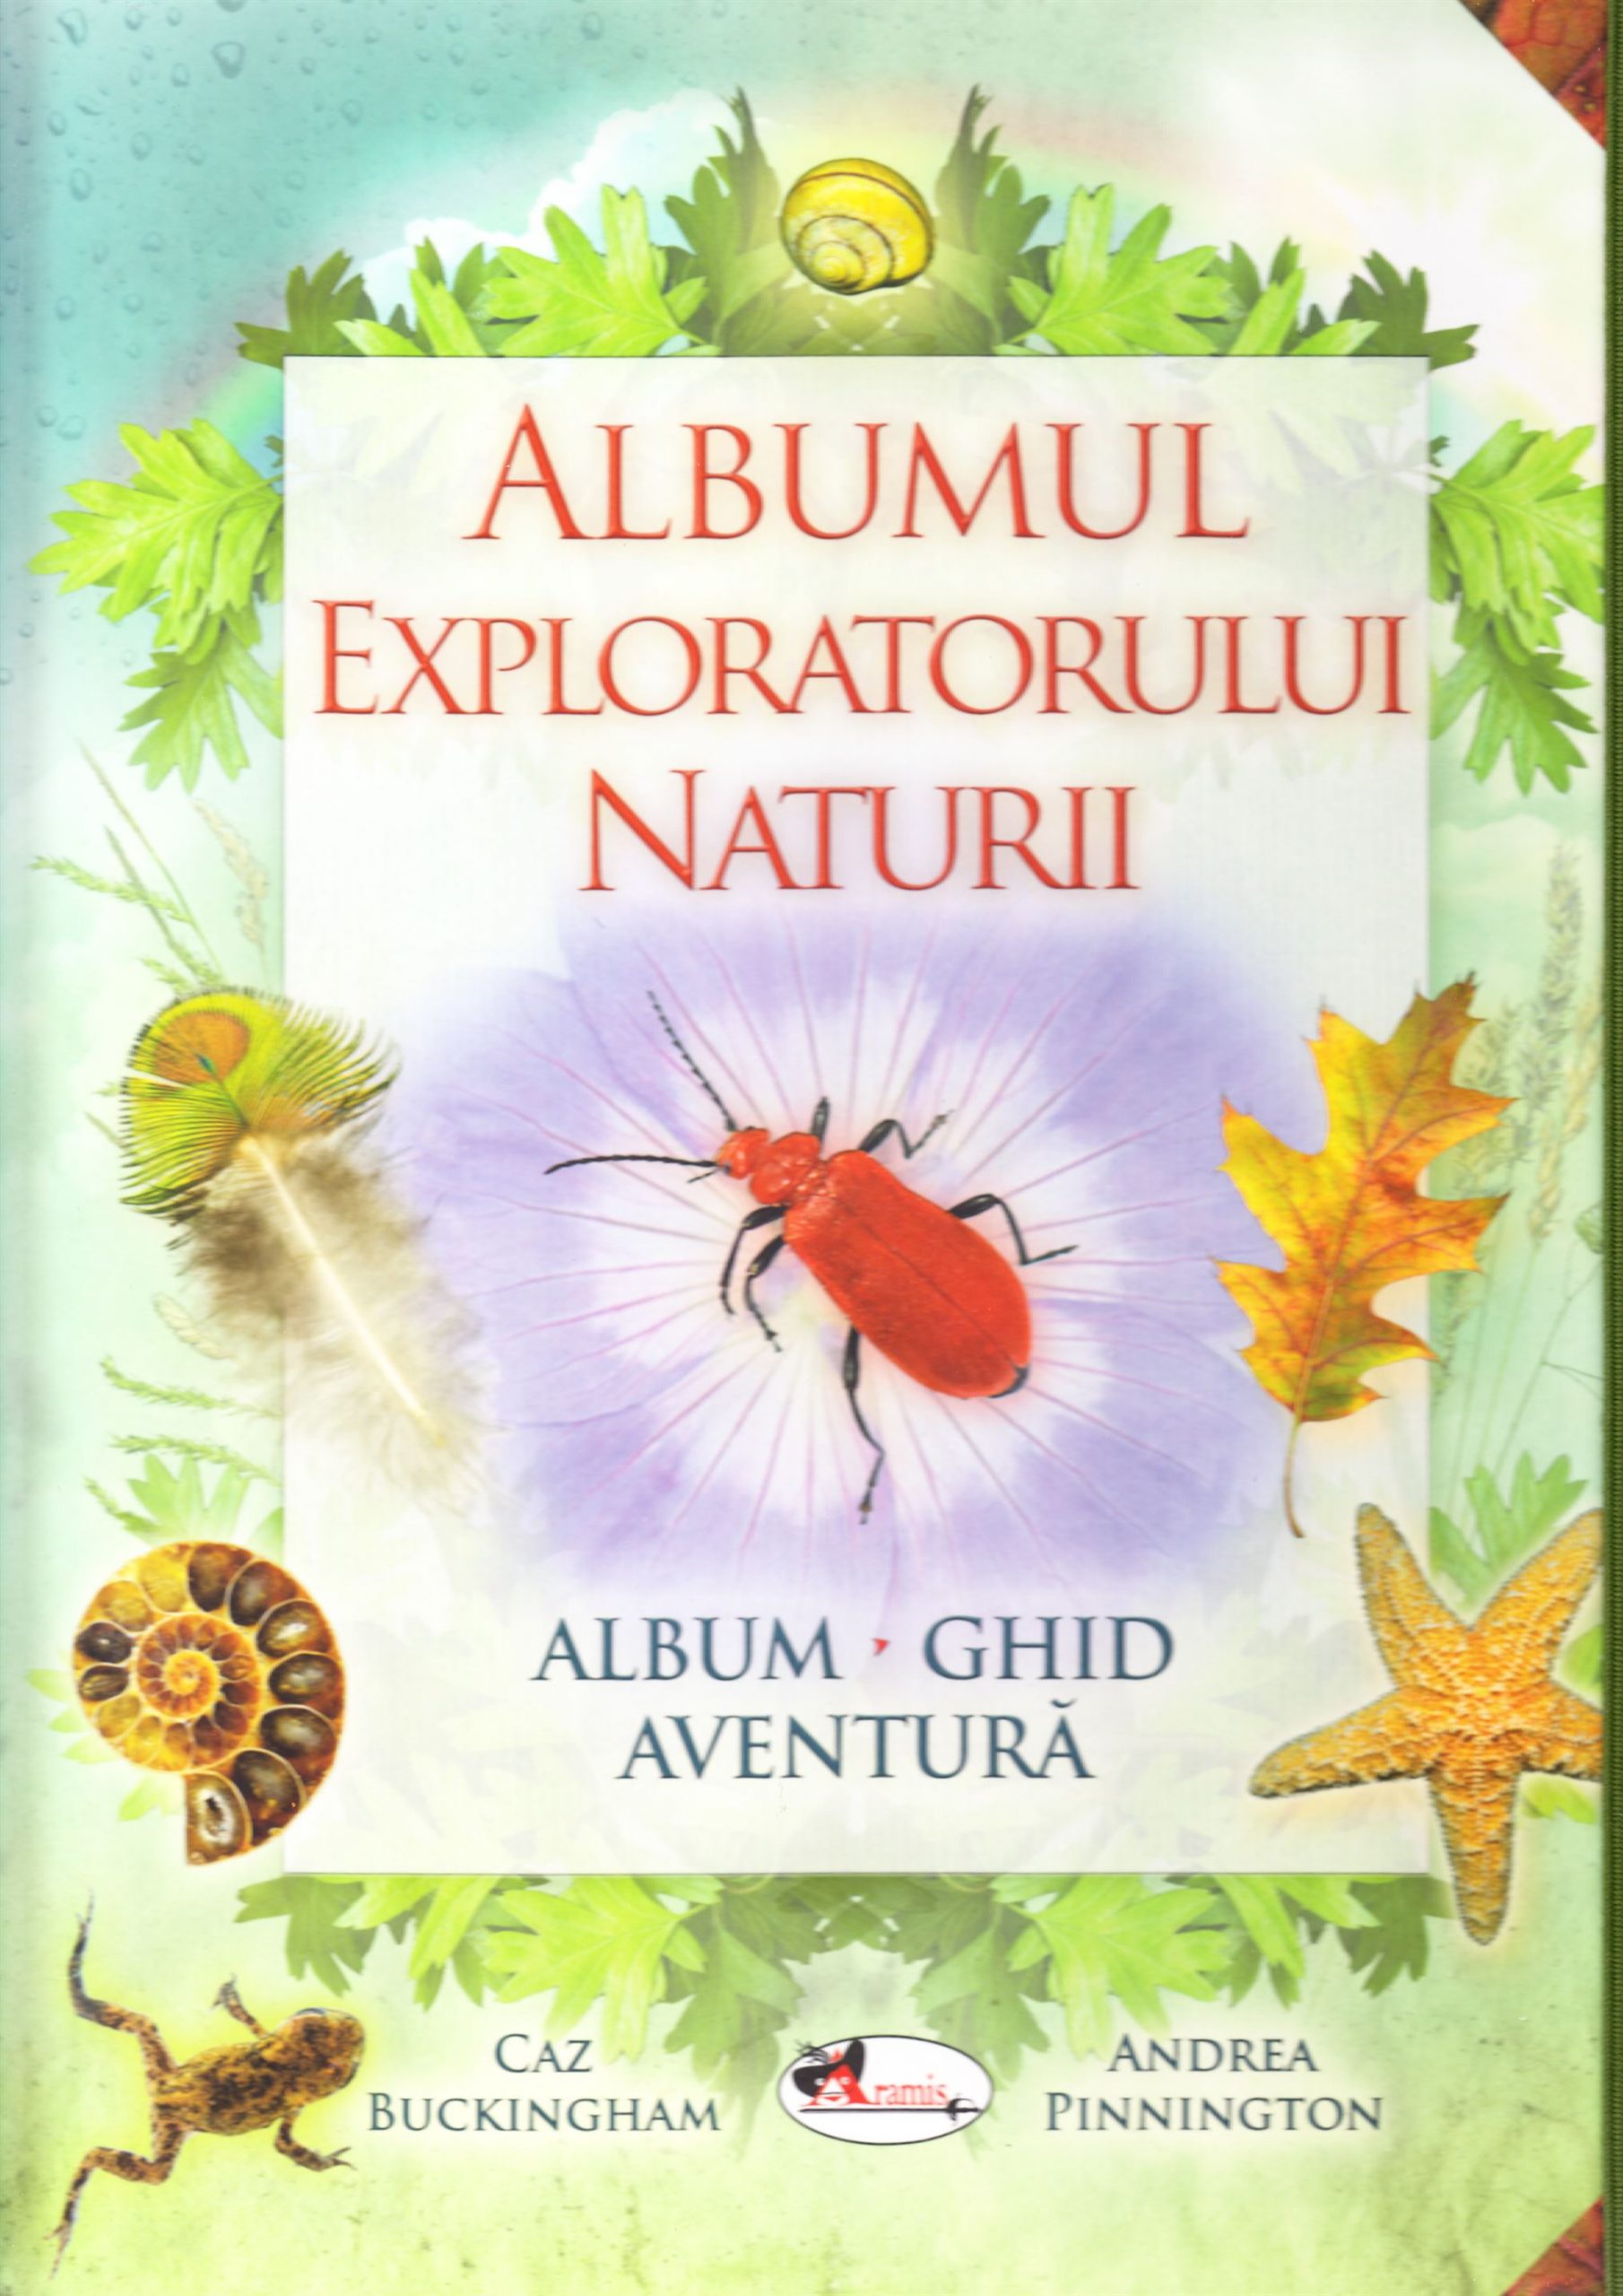 Albumul exploratorului naturii | Caz Buckingham, Andrea Pinnington adolescenti